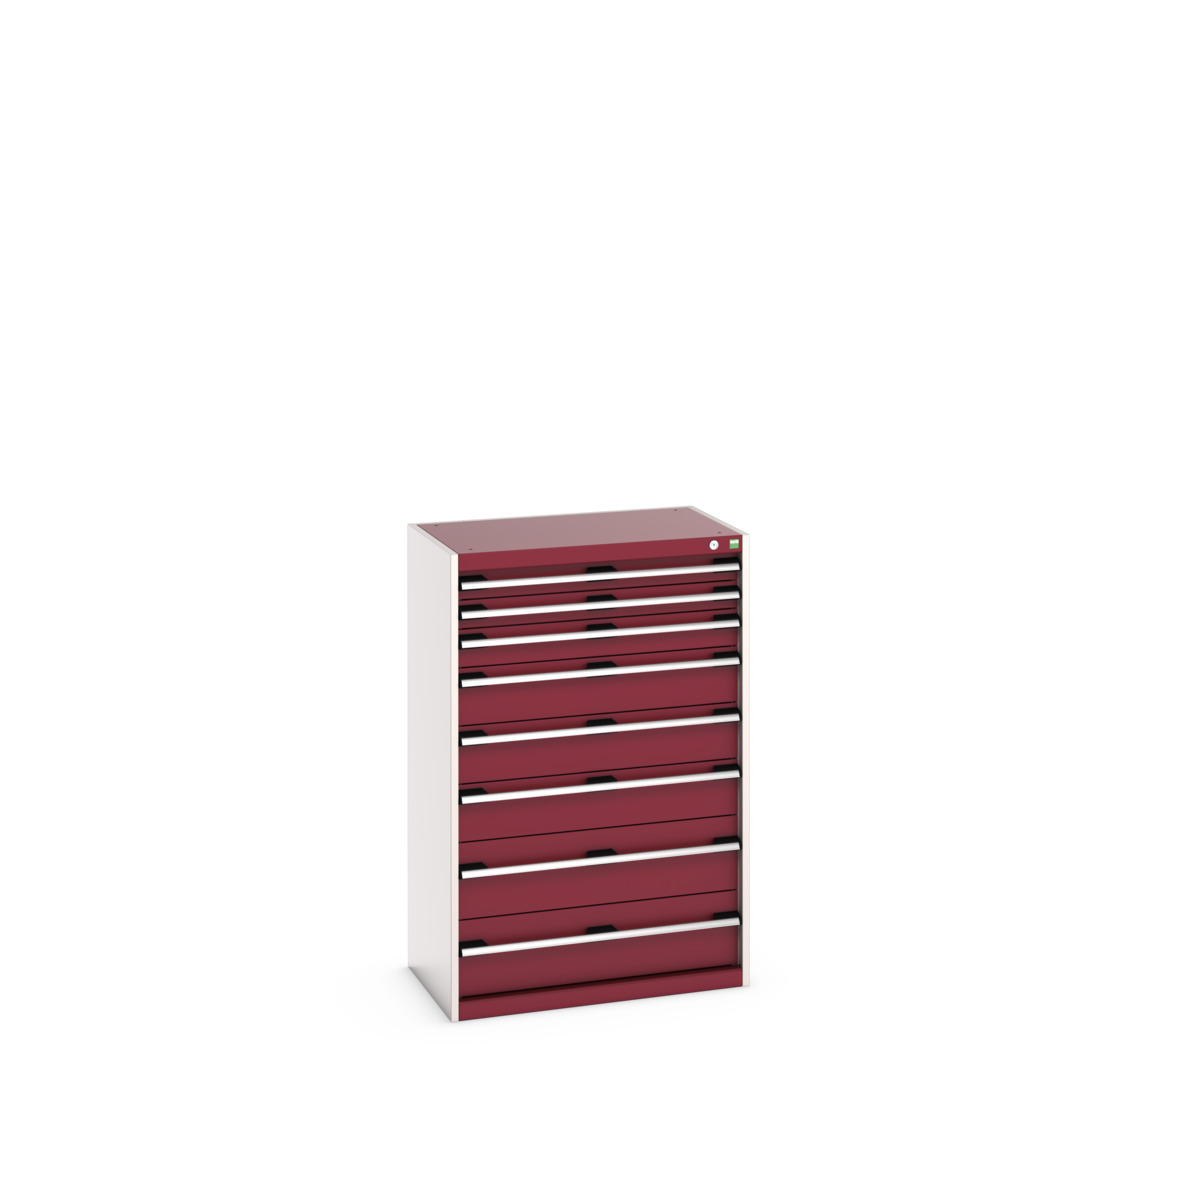 40012106.24V - cubio drawer cabinet